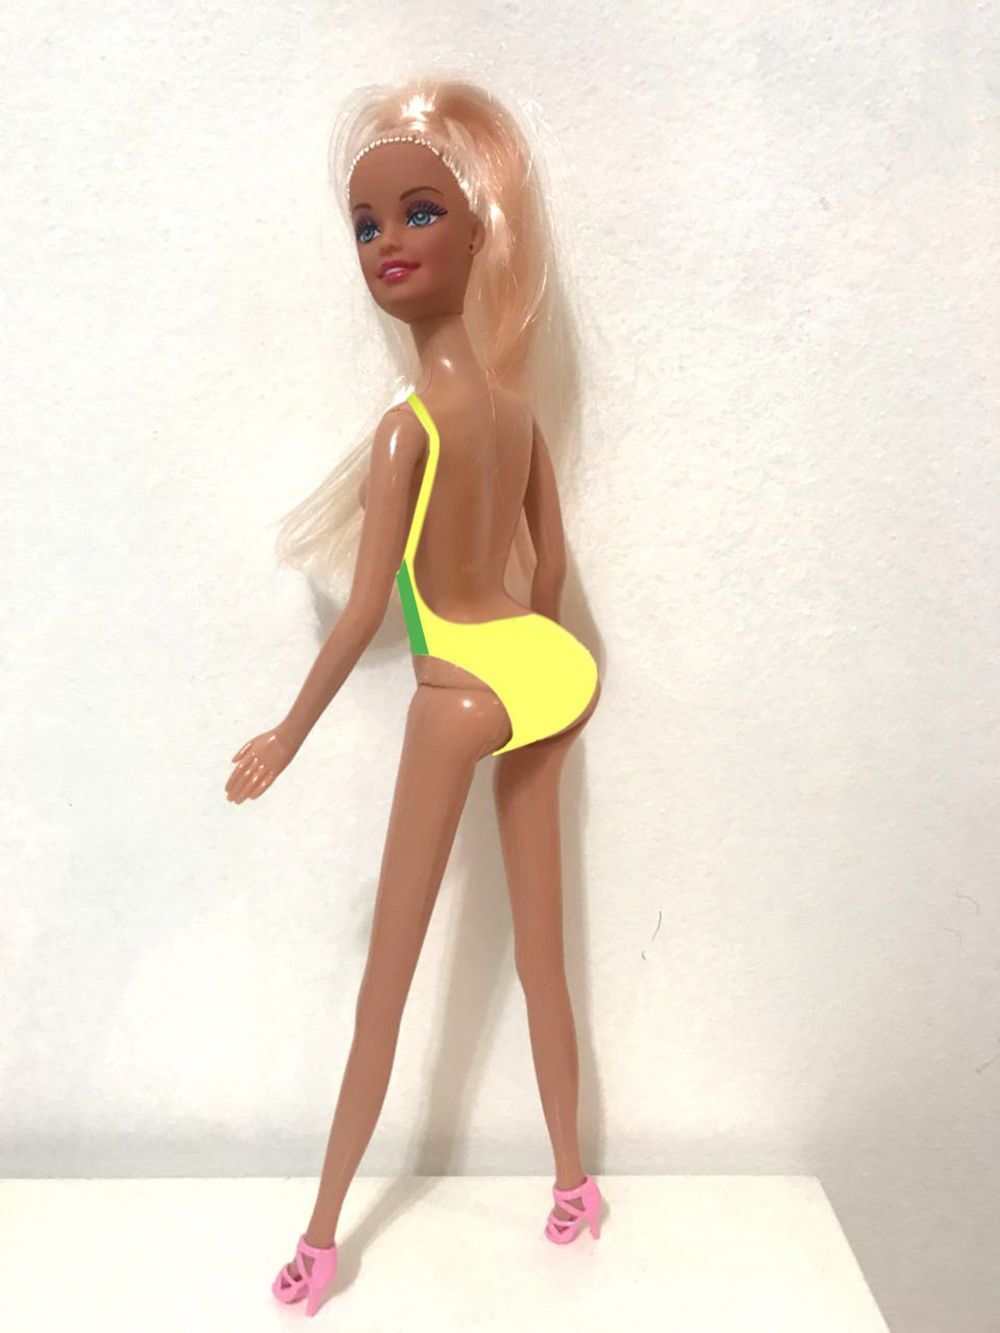 De la păpușa Barbie cea anorexică s-a ajuns la păpușa Barbie cu implant de feșe. Cum arată noul model